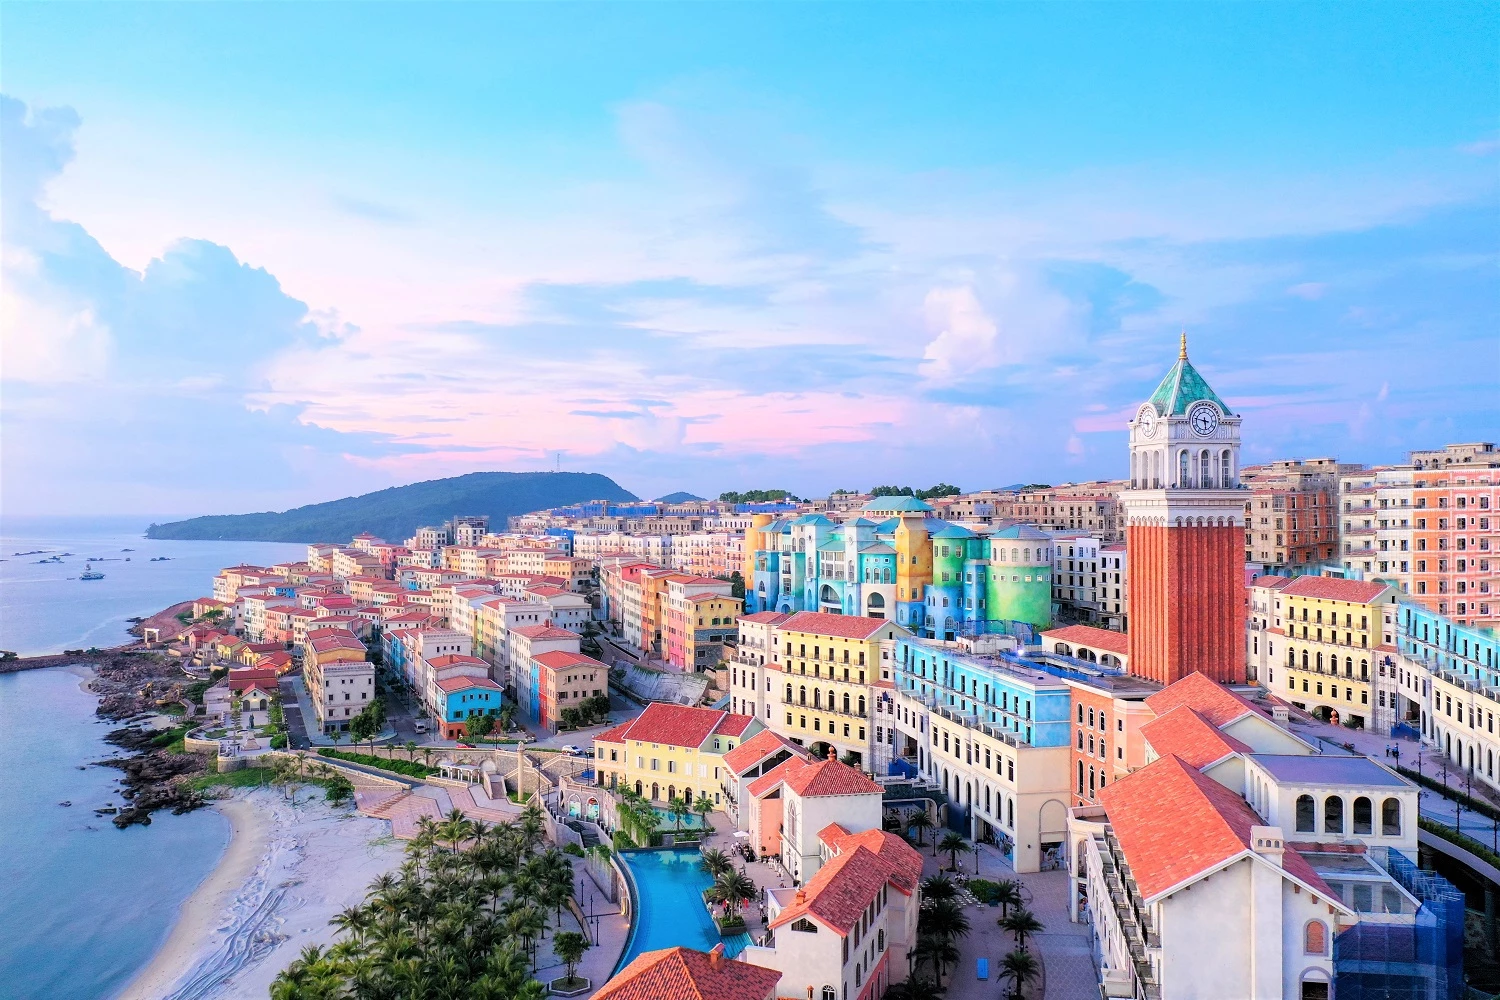 Thị trấn Địa Trung Hải đang không ngừng được Sun Group bồi đắp các công trình biểu tượng để trở thành tâm điểm du lịch, đầu tư tại Phú Quốc.